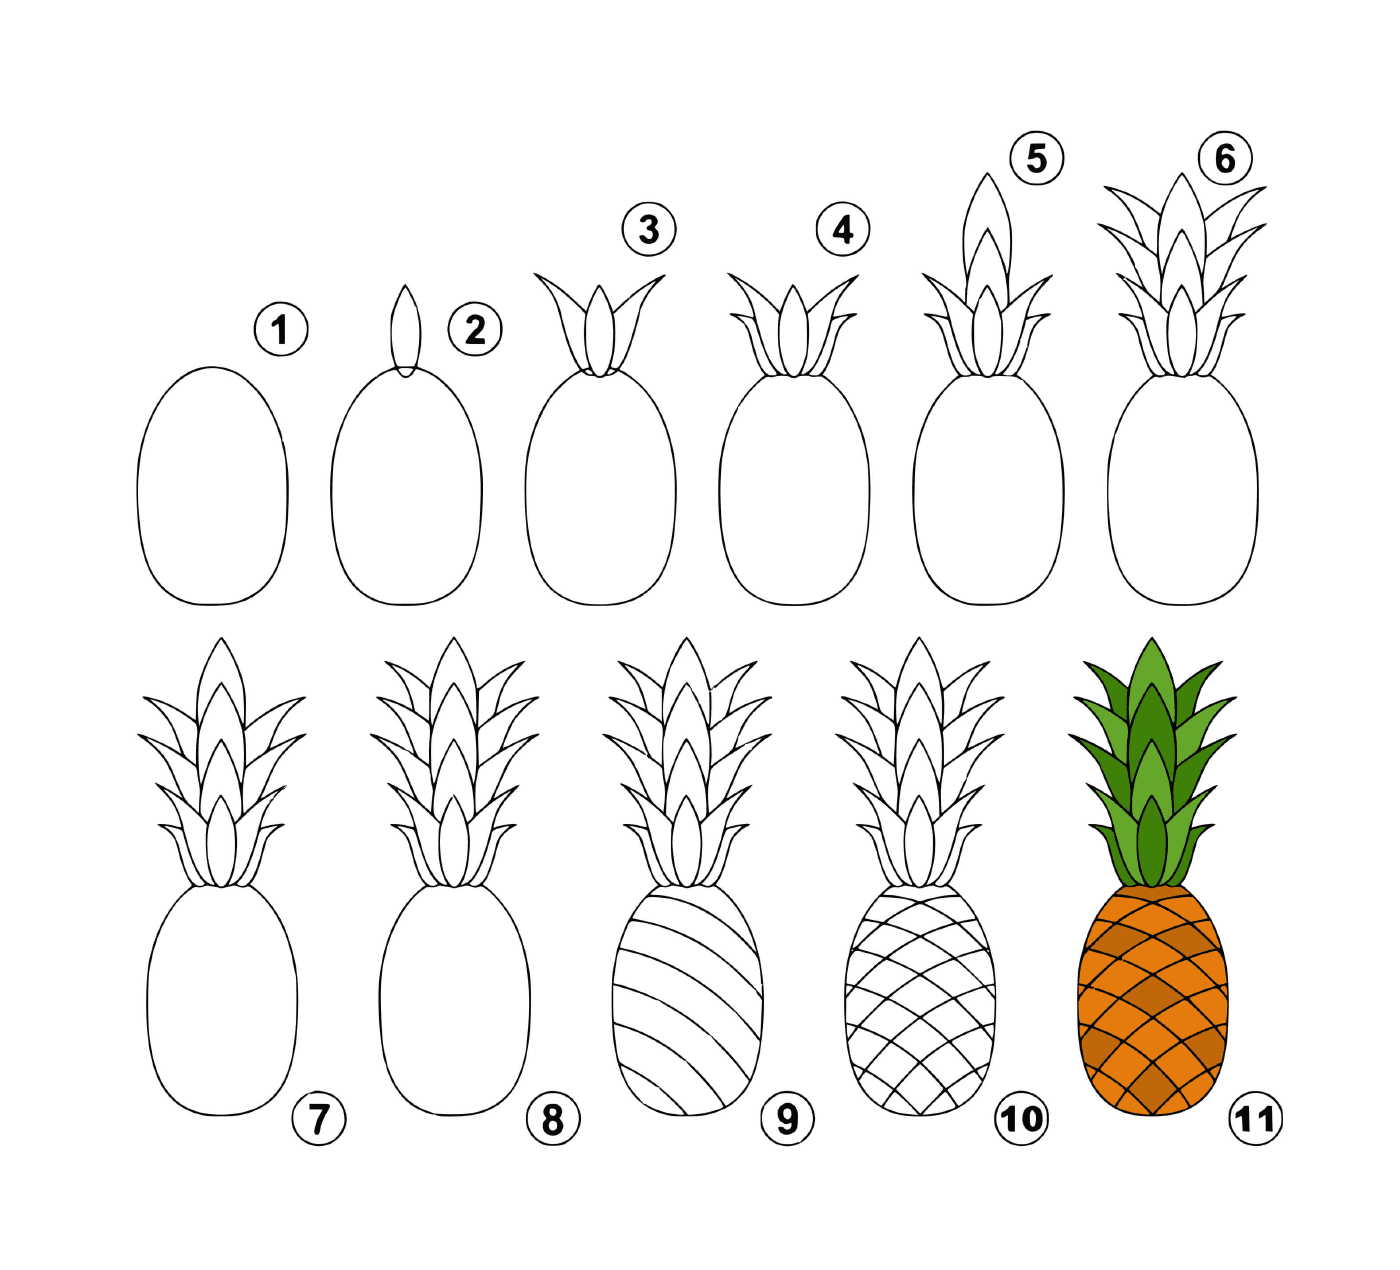  如何轻易绘制菠萝 